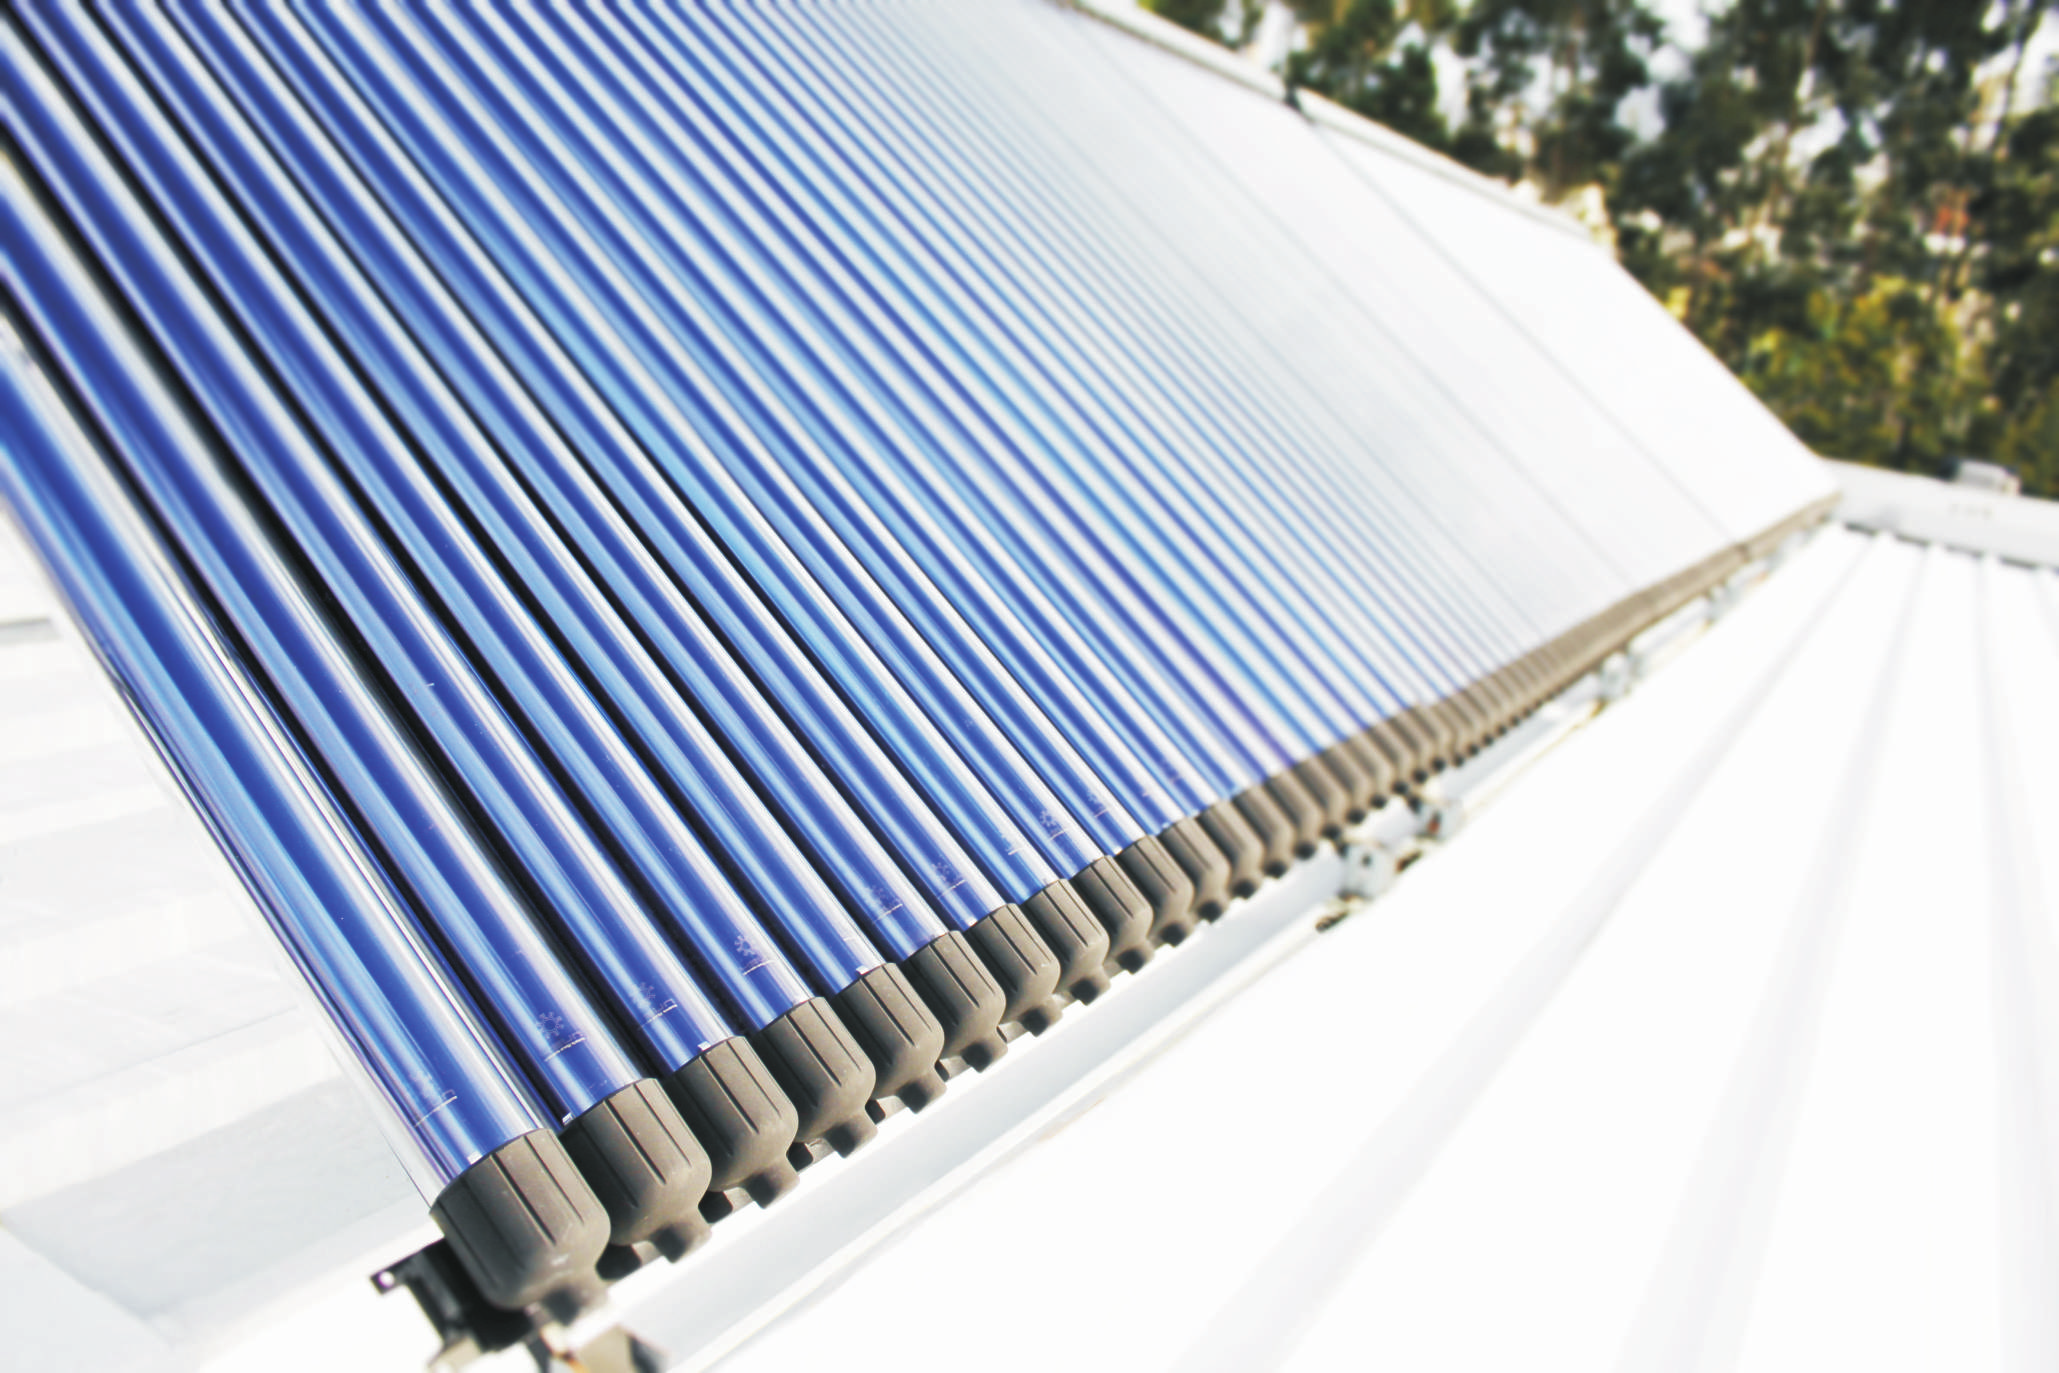 AQUECIMENTO 4SUN eficiência energética industrial benefícios O Sistema Solar Térmico Industrial 4Sun reduz os Consumos Energéticos associados aos processos produtivos tornando a sua empresa mais